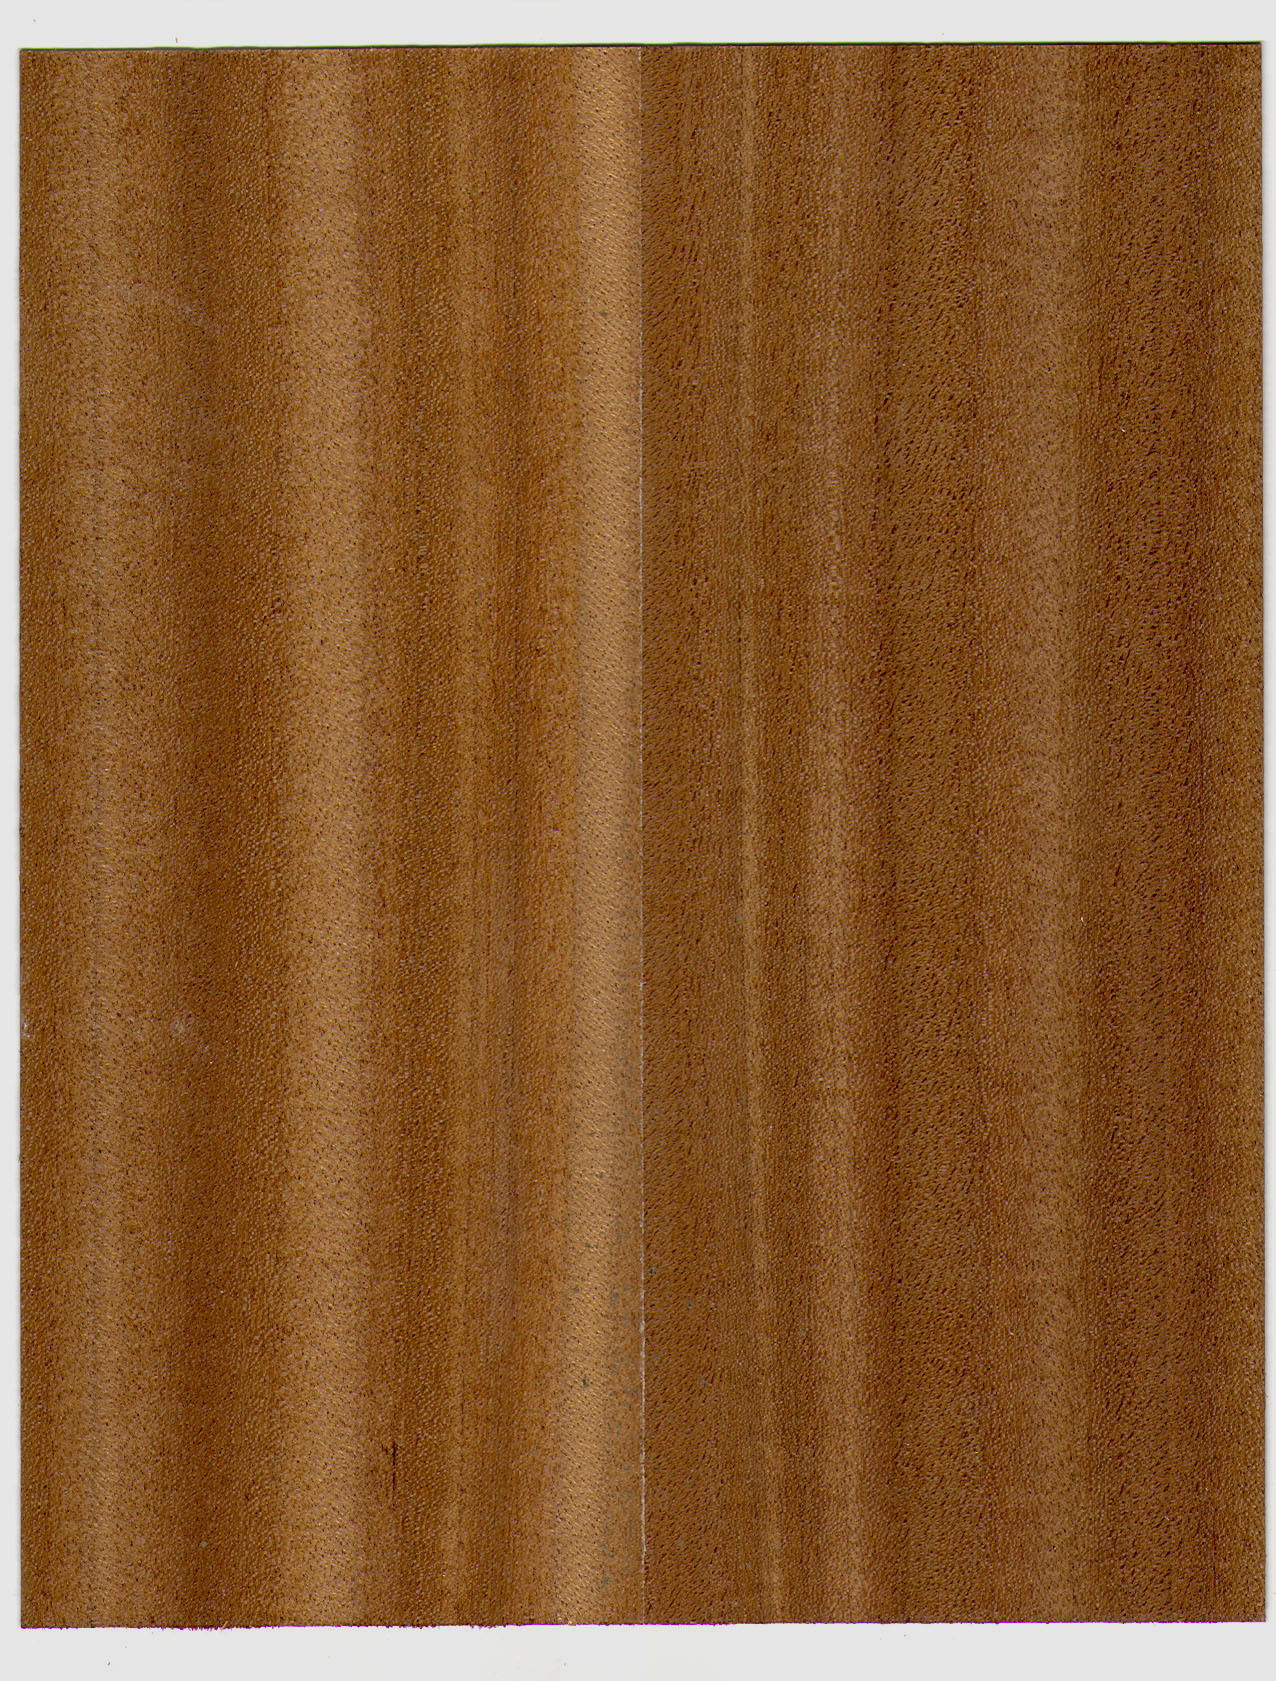 Laminate Photo Background Wood Texture Image